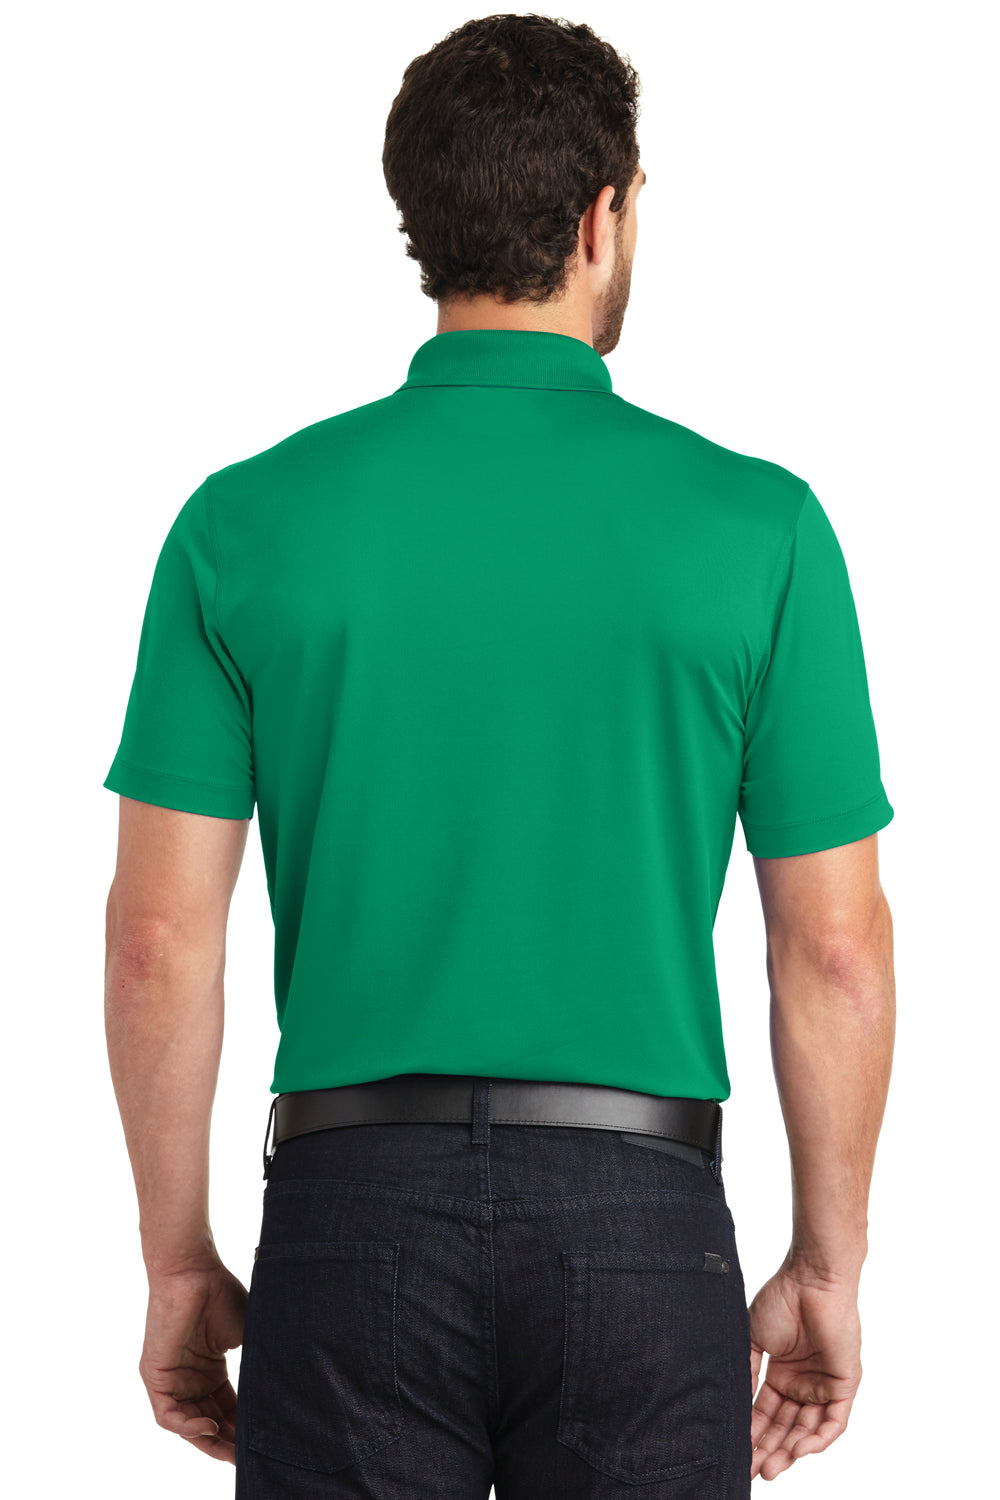 Ogio OG130 Mens Metro Moisture Wicking Short Sleeve Polo Shirt Shift Green Back